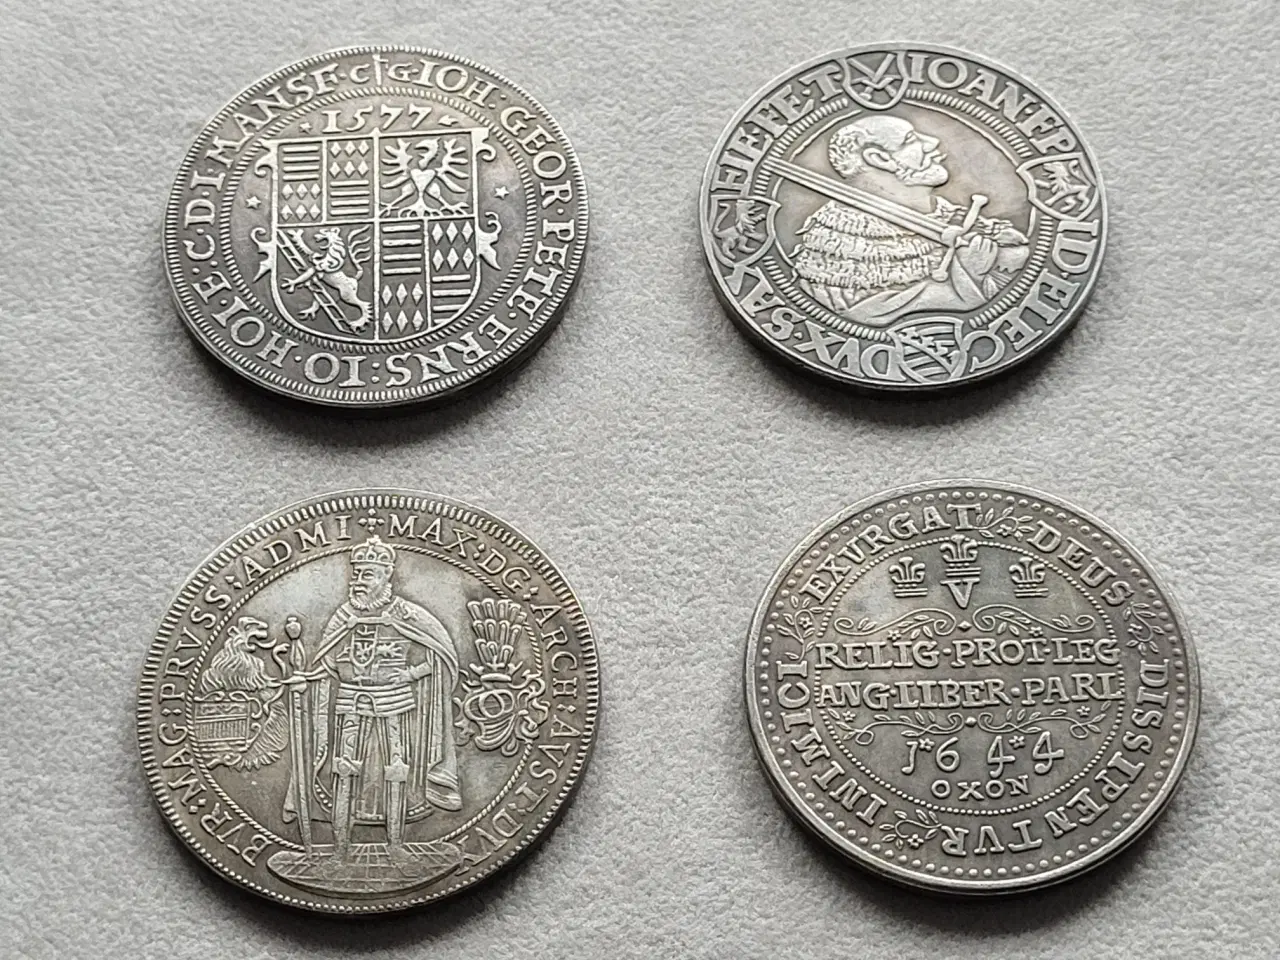 Billede 2 - Europa mønter/medaljer i reproduktioner